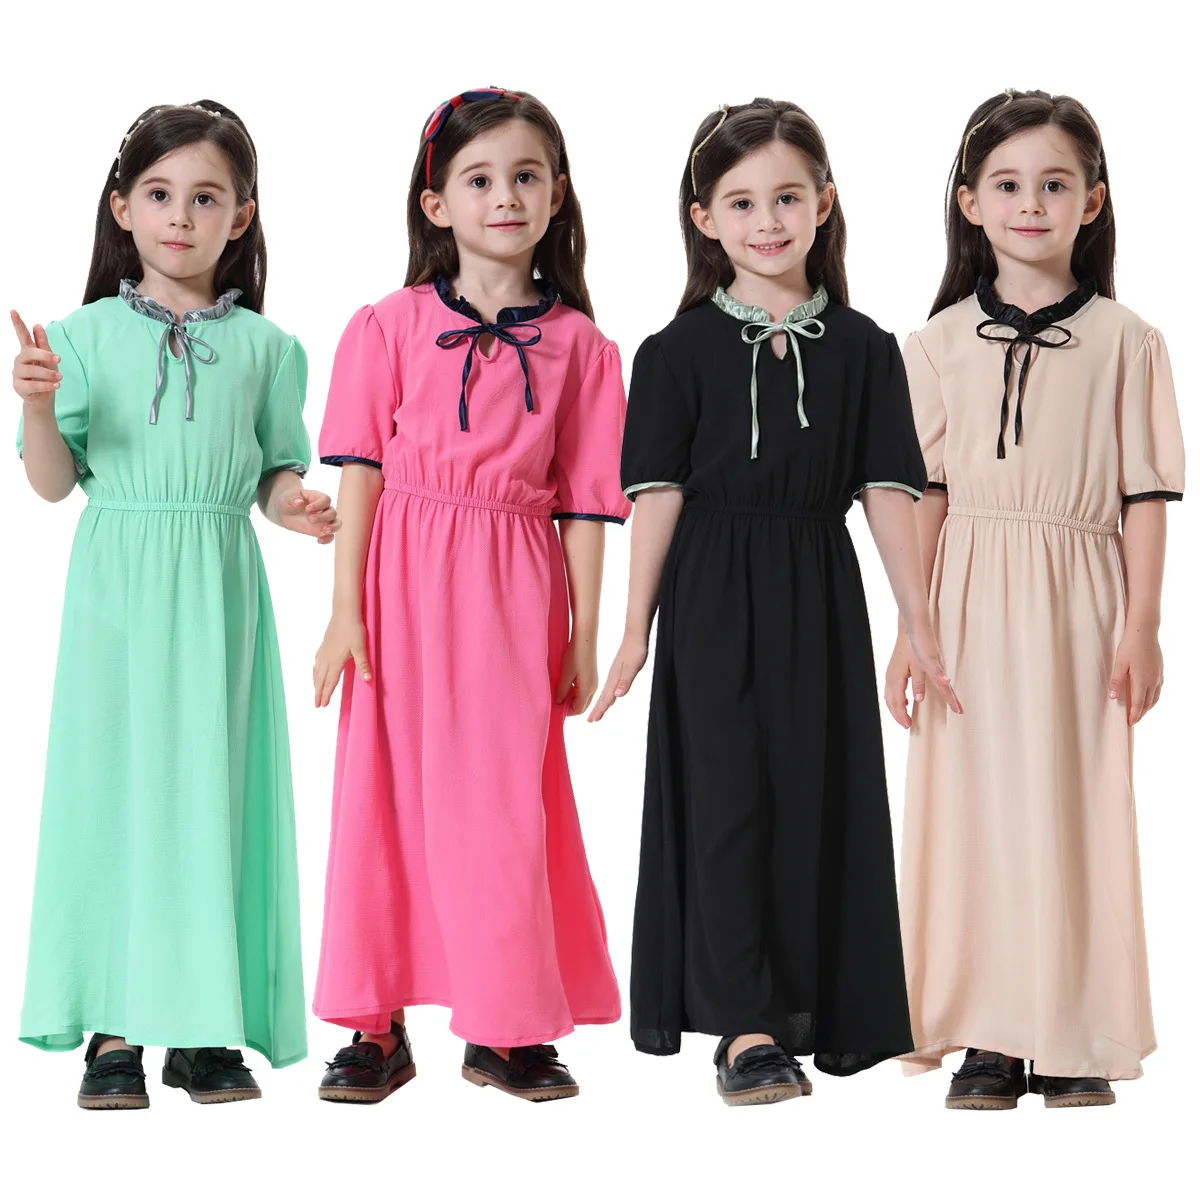 "Мусульманская одежда для детей; Мусульманское платье для девочек; Abaya; Мусульманское платье для девочек; Детская одежда в арабском и мусульм..."